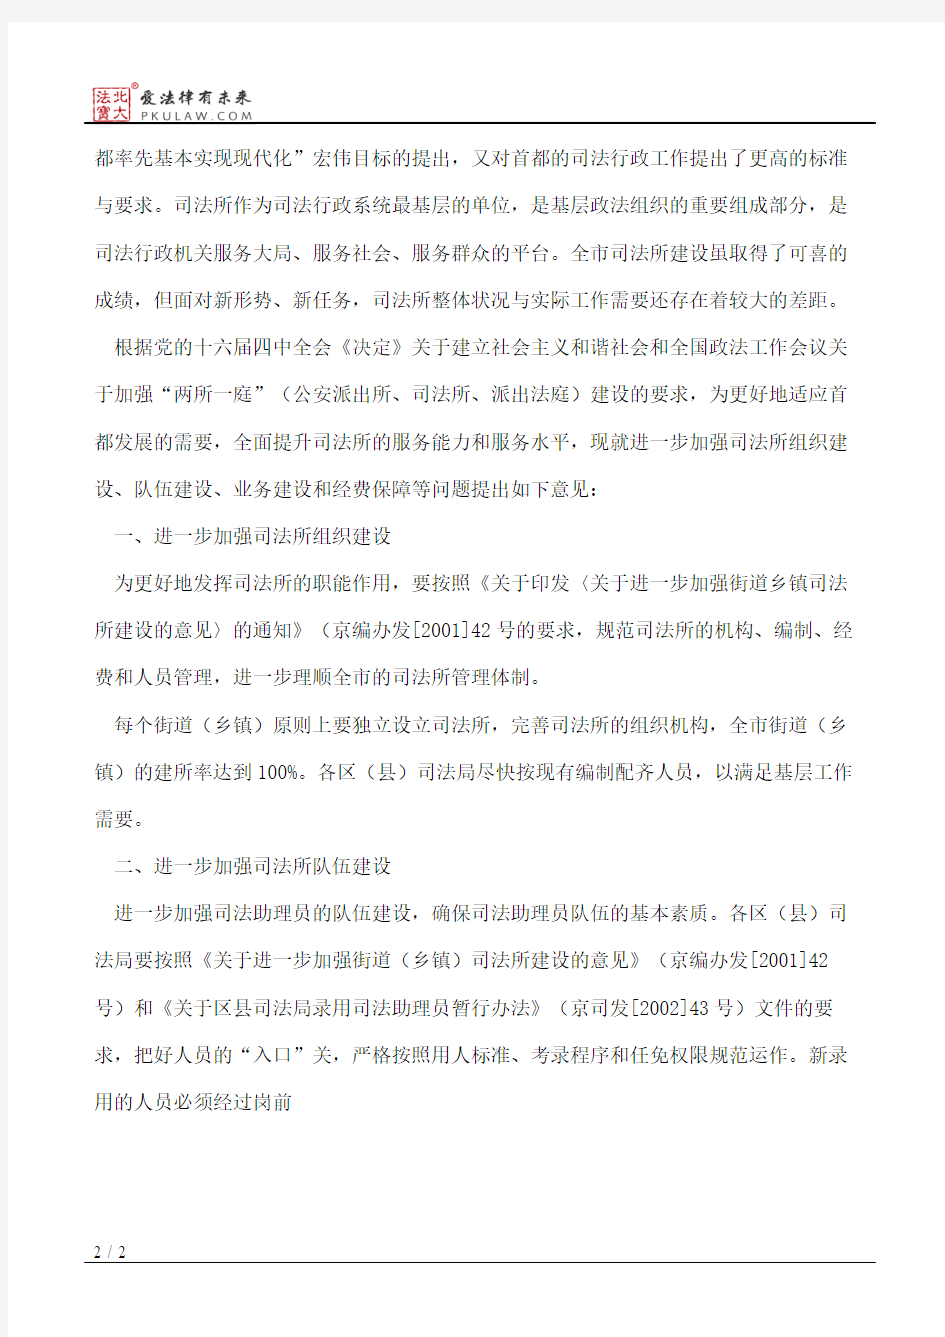 北京市司法局关于进一步加强司法所规范化建设的意见